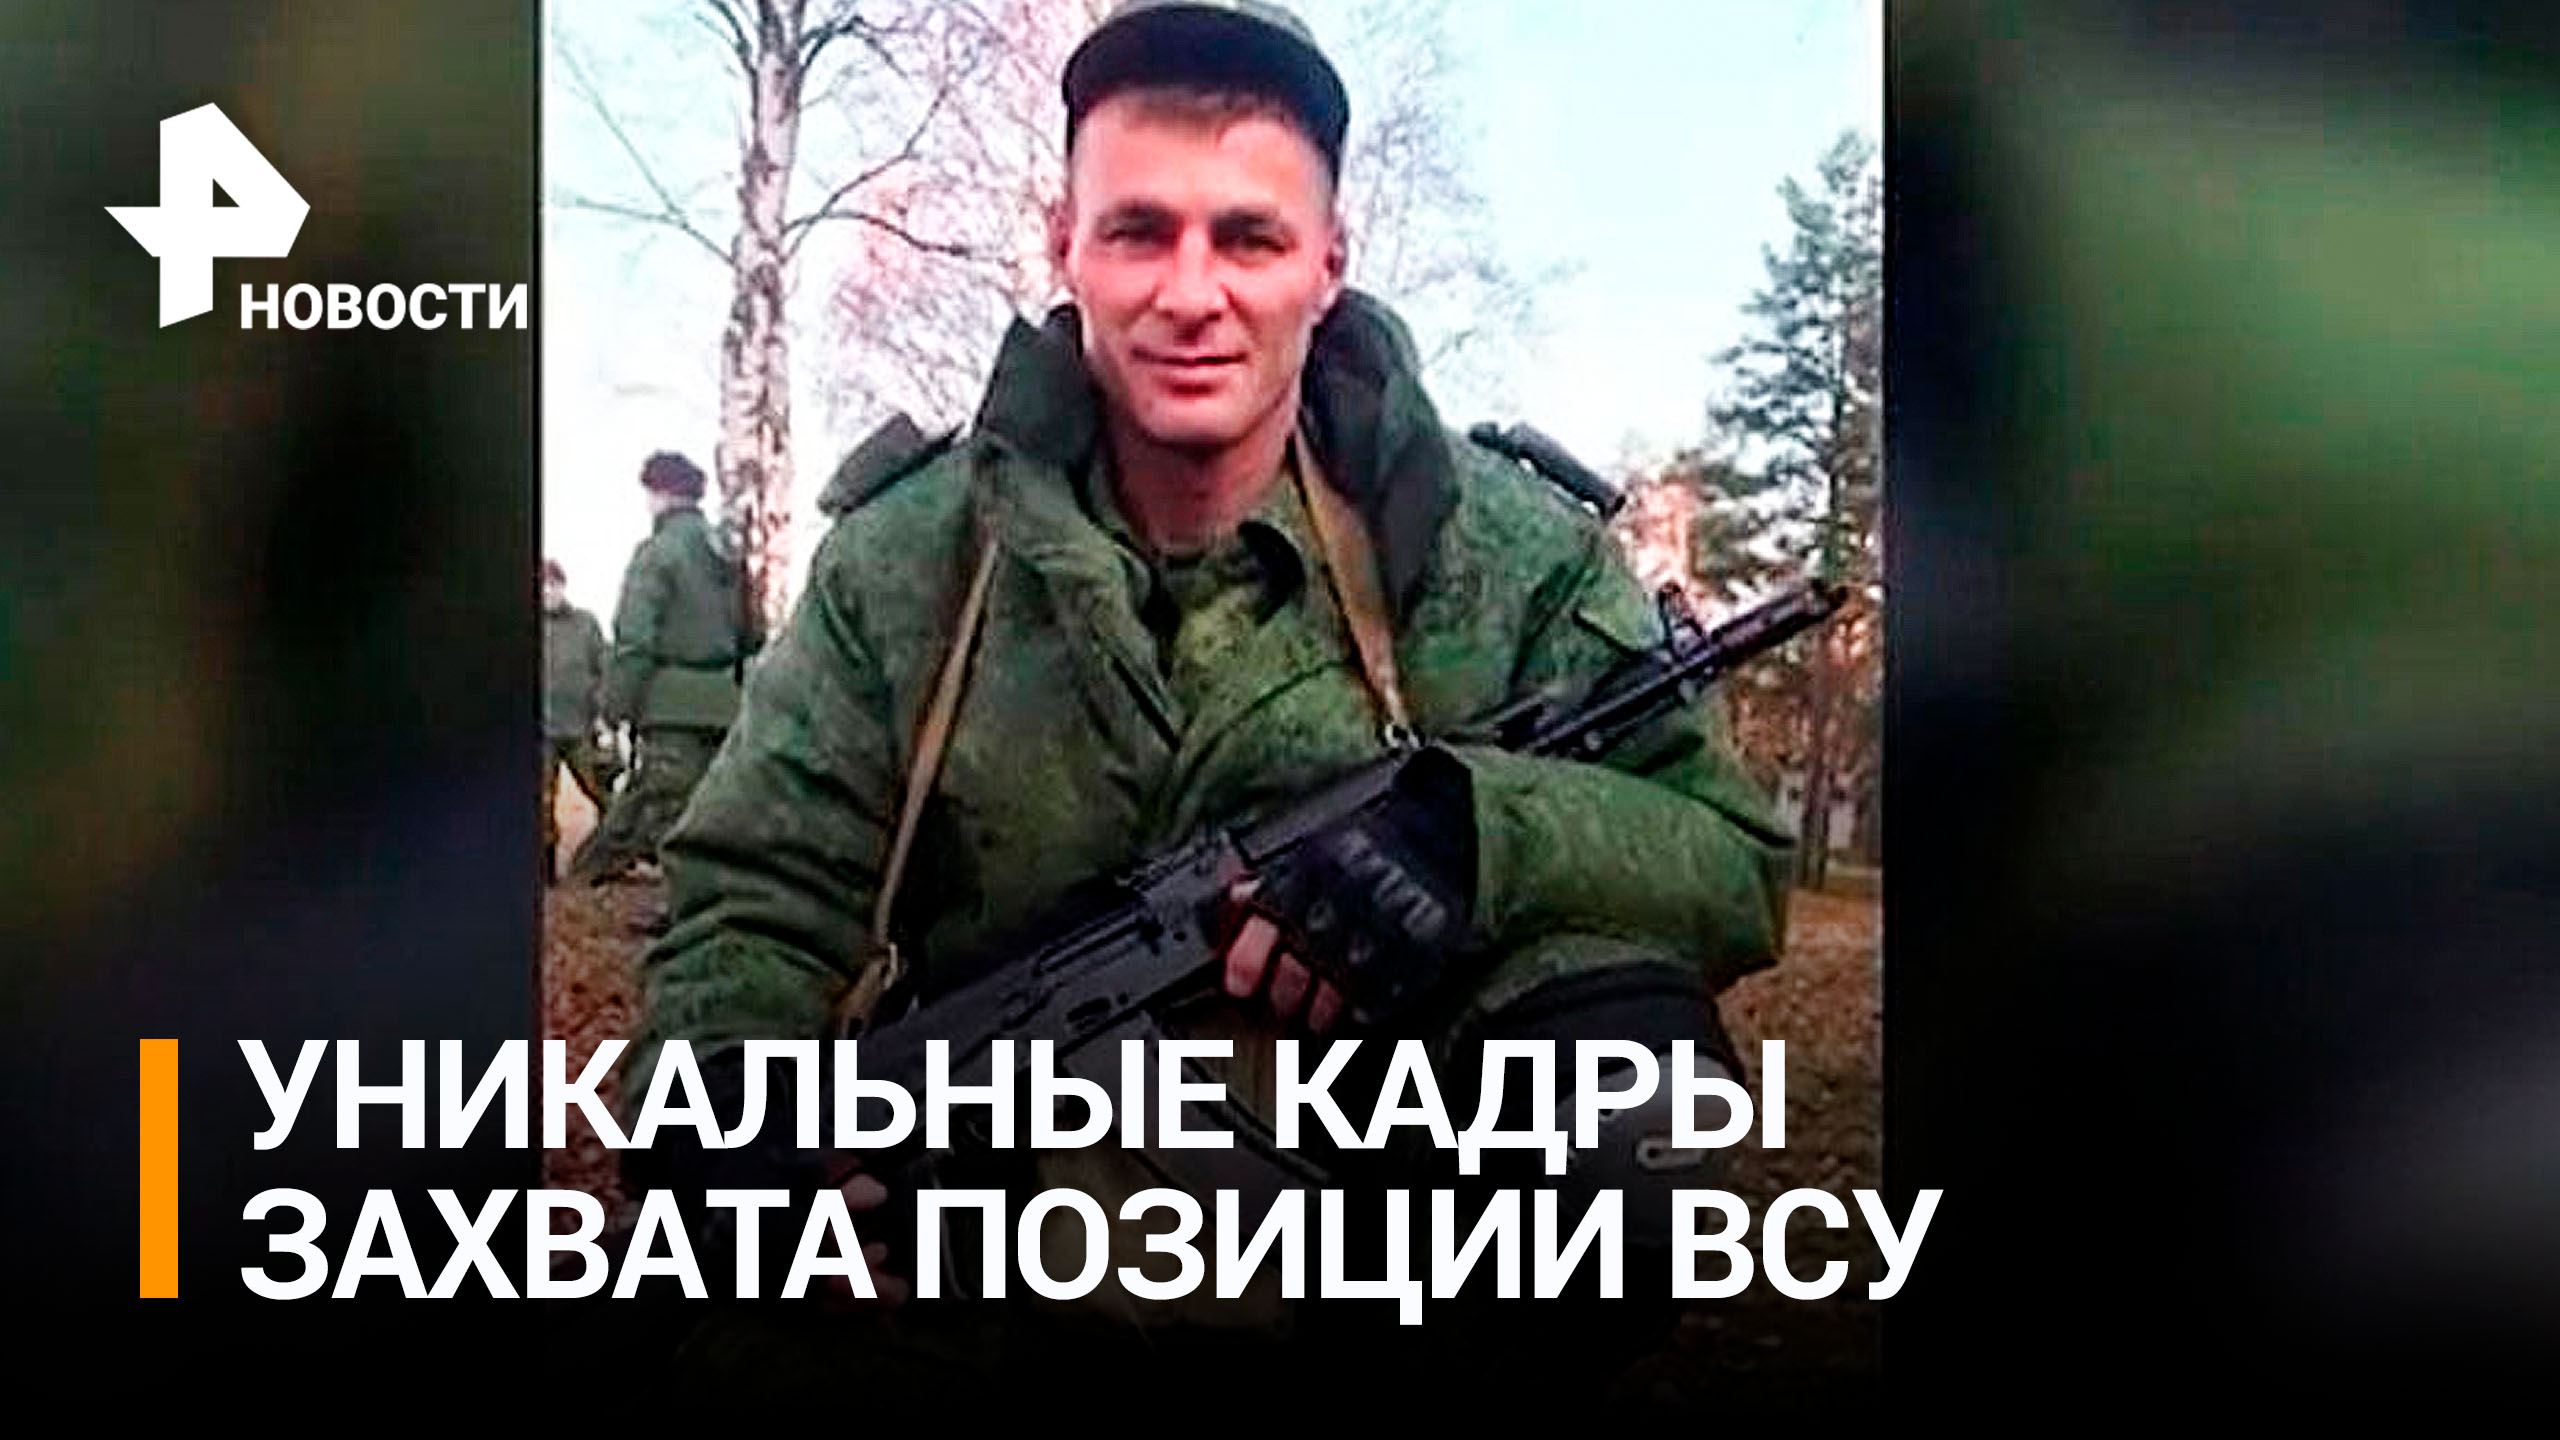 Героический подвиг: как сержант ВС РФ в одиночку захватил позицию ВСУ / РЕН Новости